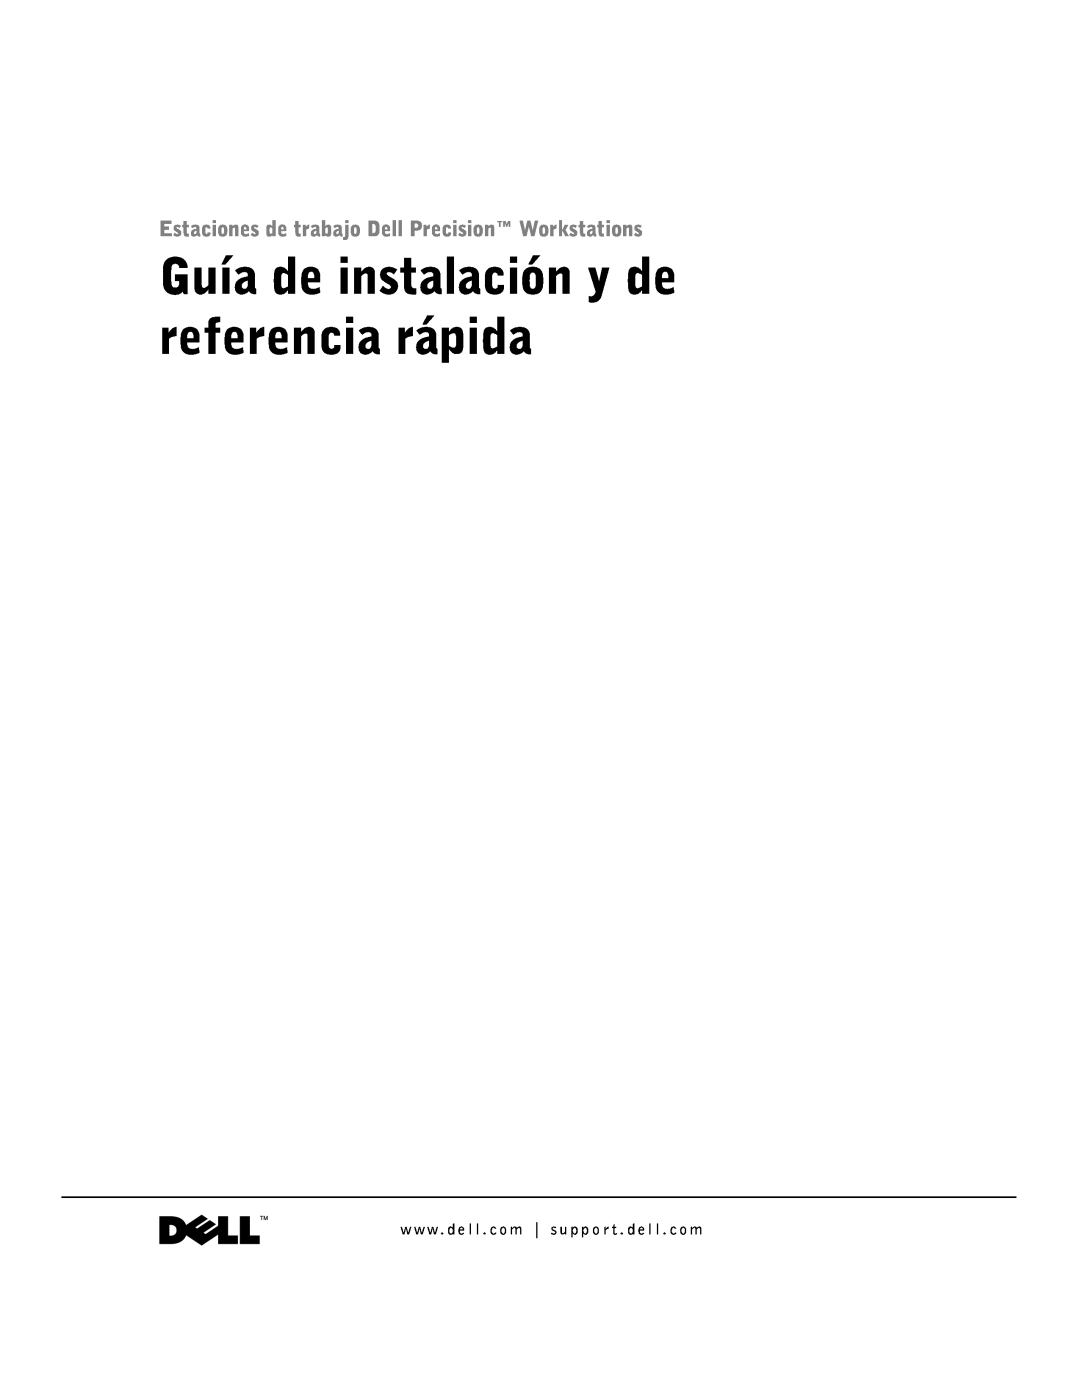 Dell 1G155 manual Guía de instalación y de referencia rápida, Estaciones de trabajo Dell Precision Workstations 